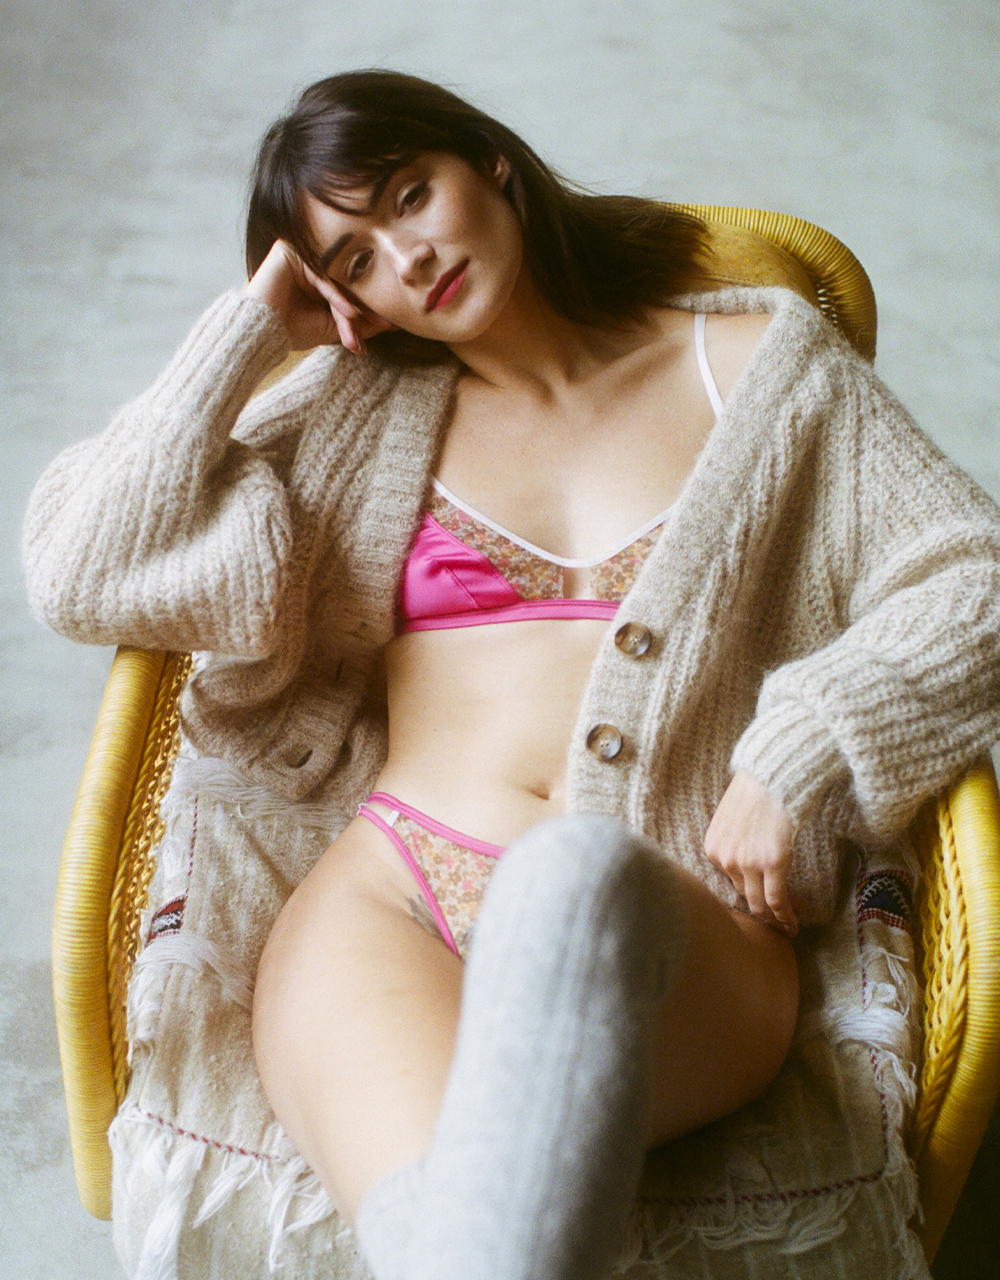 https://www.girlsinparis.com/images/lingerie/soutien-gorge-avec-armatures-melrose_5349_04_a.jpg